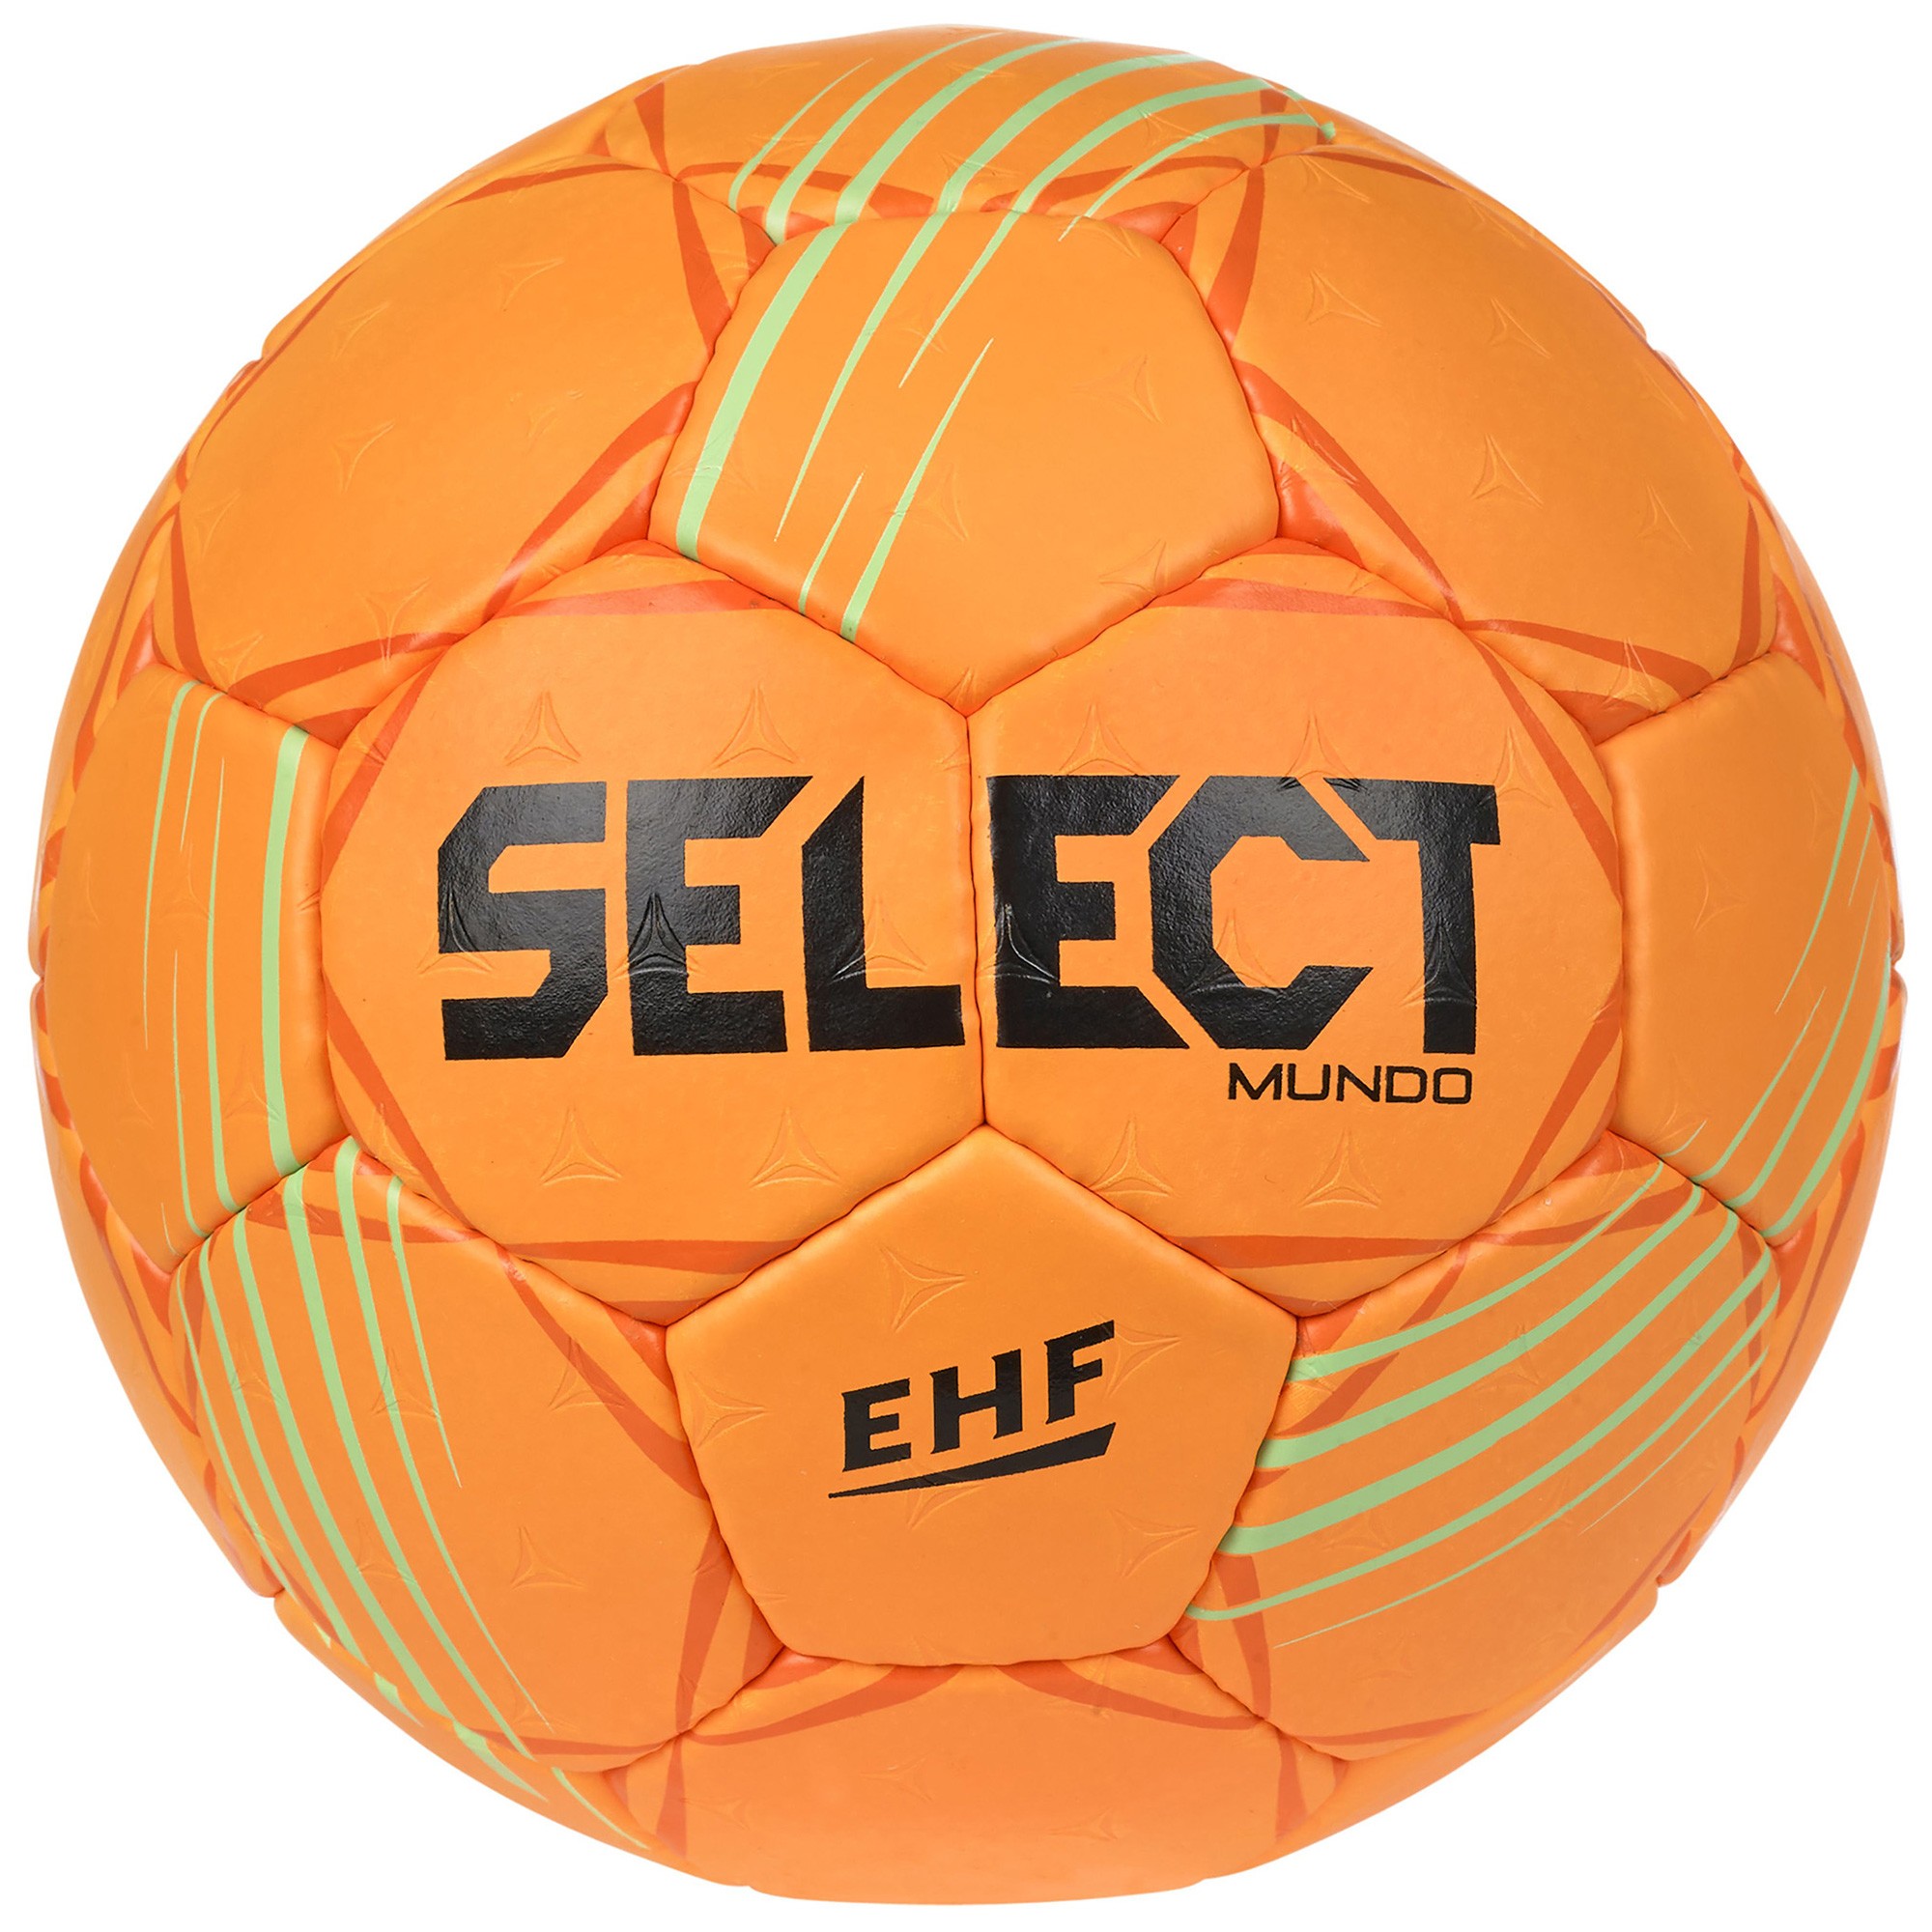 Select Ballon Numero 10 V23 - Blanc/Vert